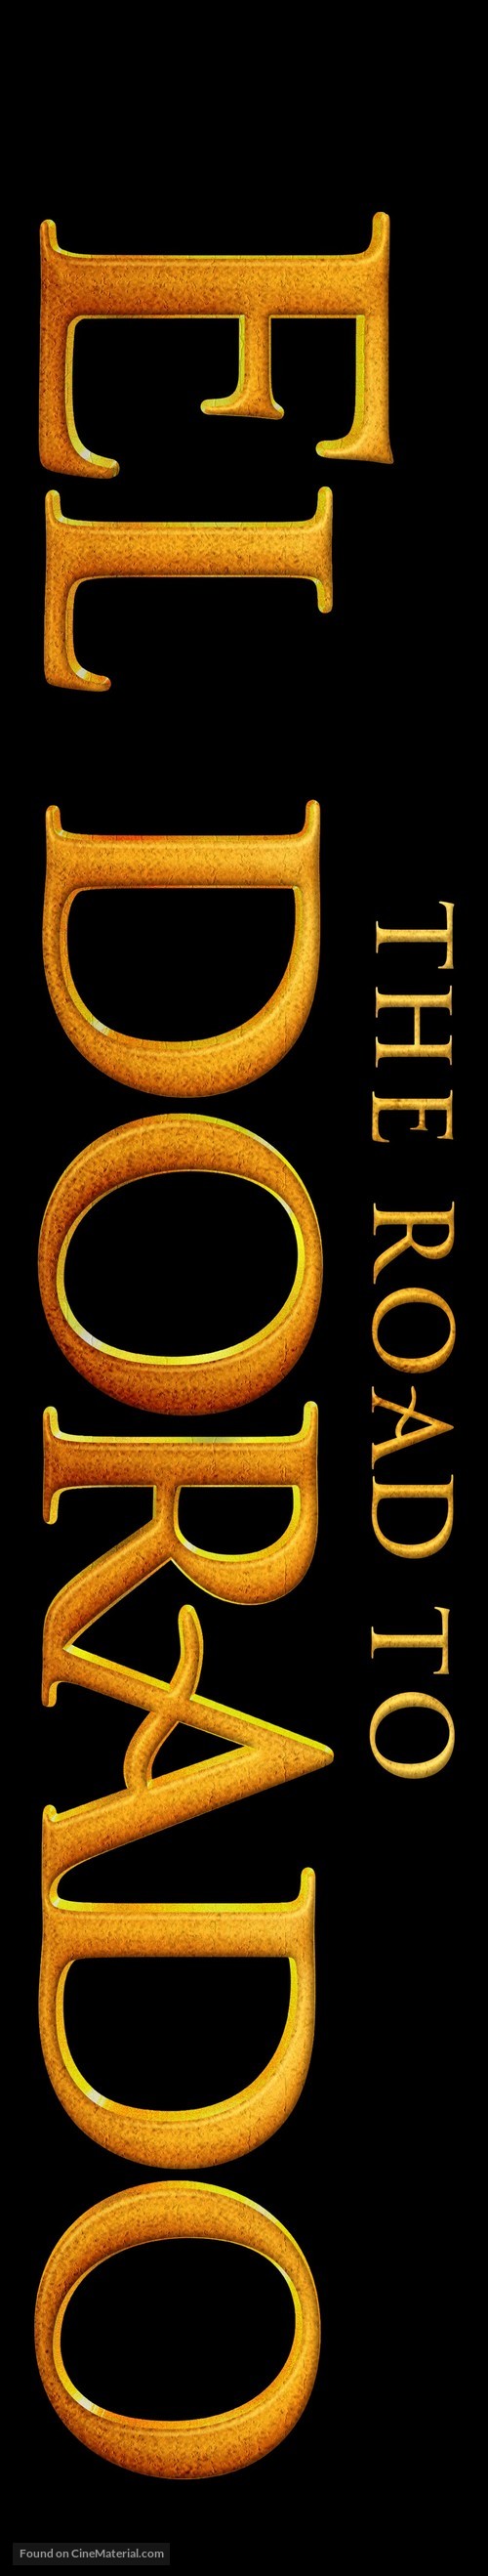 The Road to El Dorado - Logo